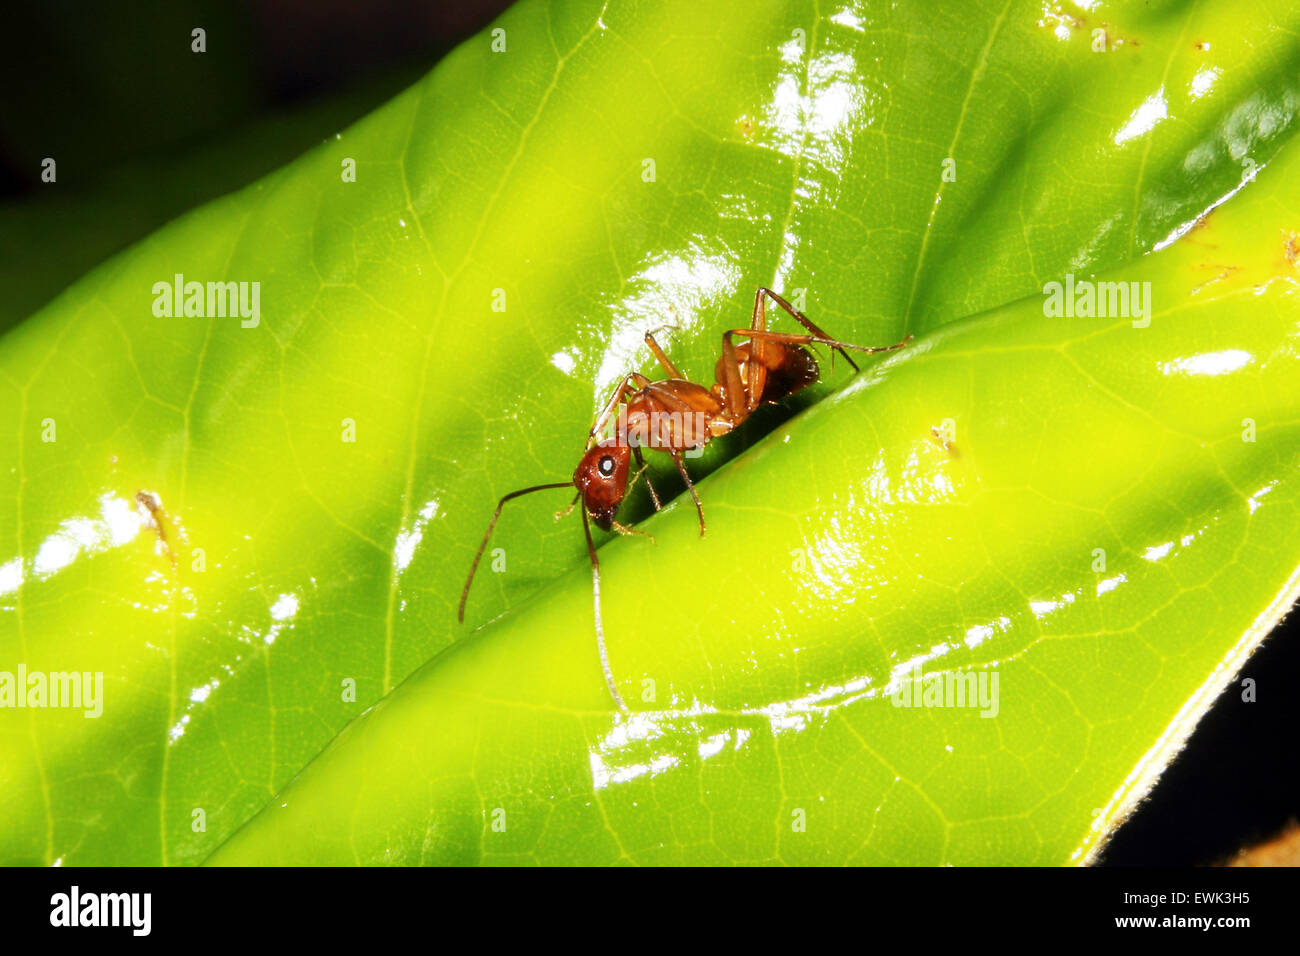 Una hormiga carpintero rojo buscando una comida en una hoja. Foto de stock